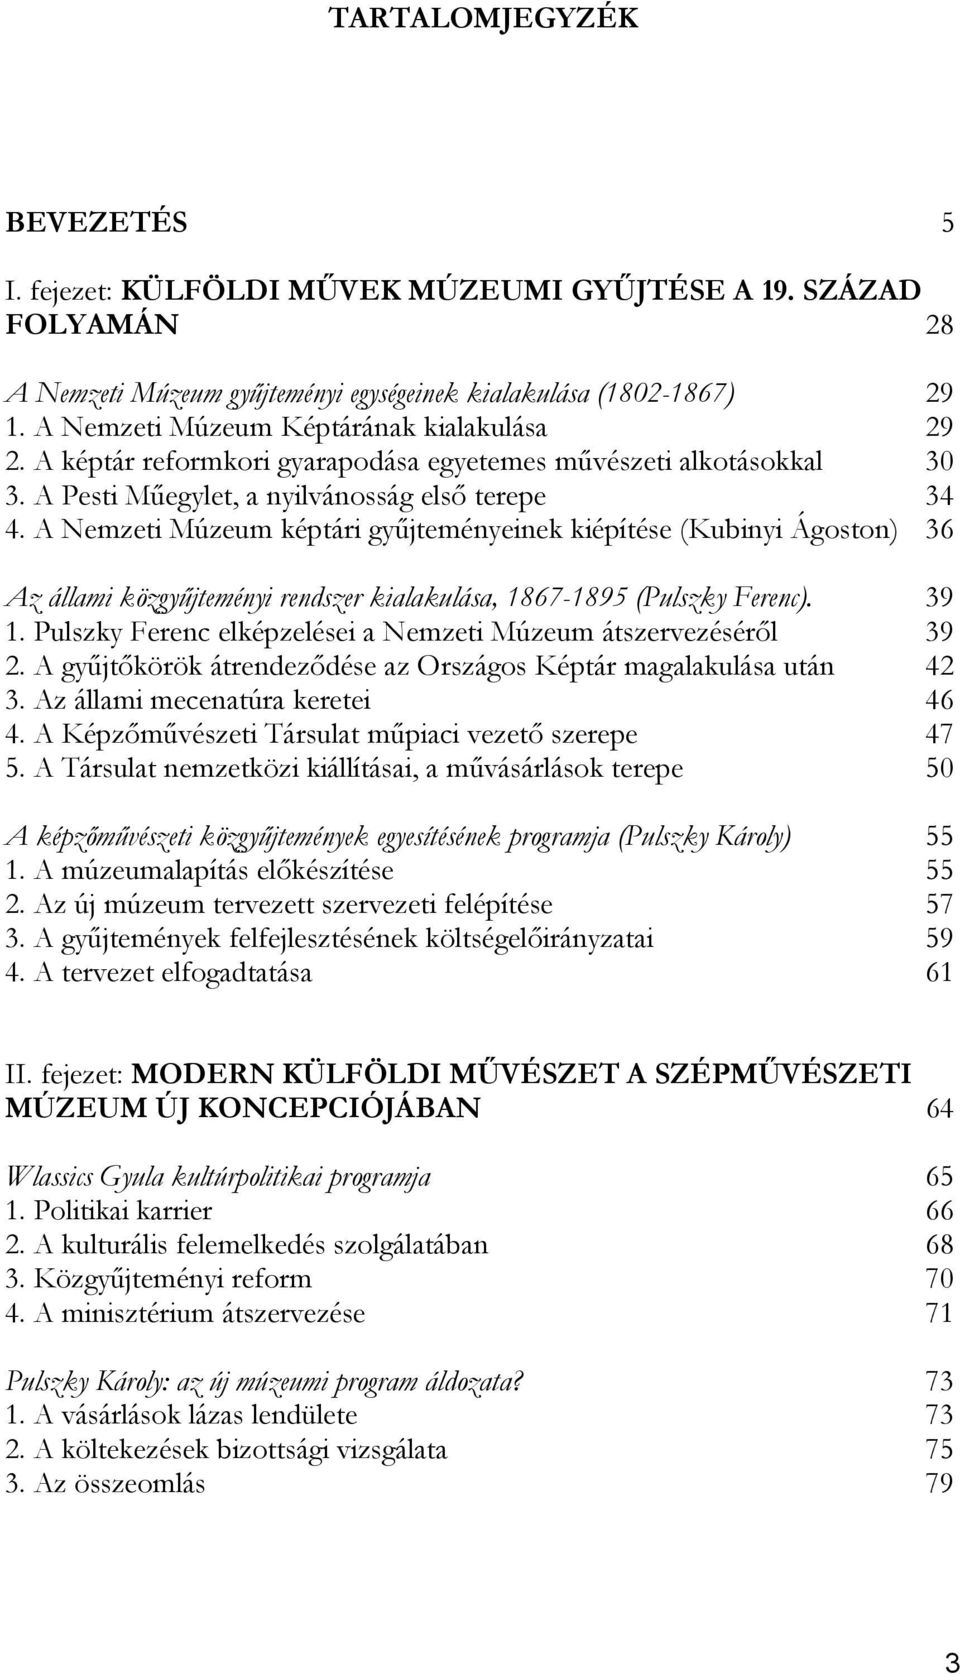 A Nemzeti Múzeum képtári gyűjteményeinek kiépítése (Kubinyi Ágoston) 36 Az állami közgyűjteményi rendszer kialakulása, 1867-1895 (Pulszky Ferenc). 39 1.